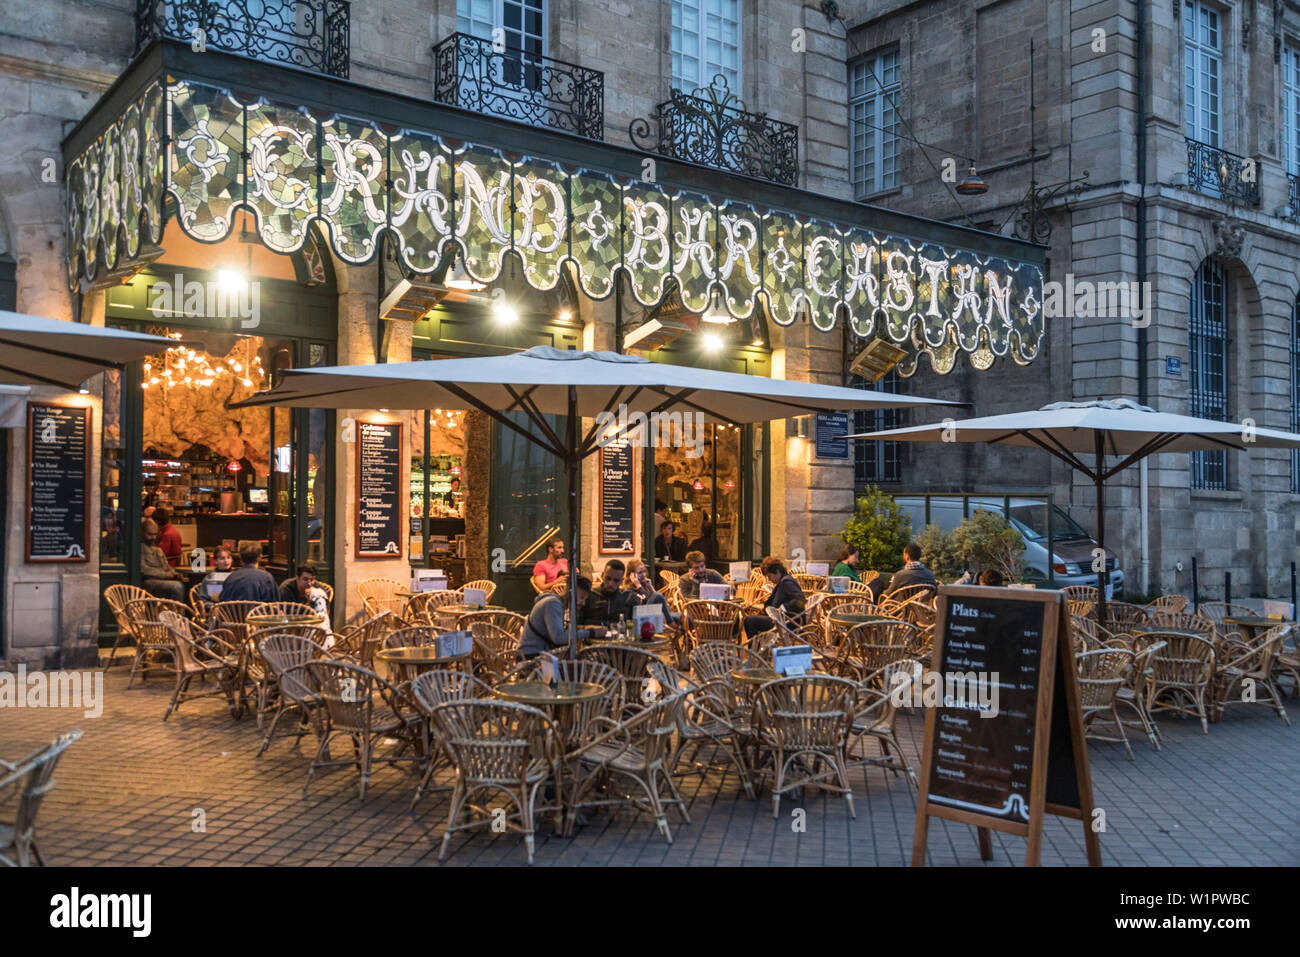 Quai de la Douane, Grand Bar Castan, street Cafe, Bordeaux, France Stock Photo